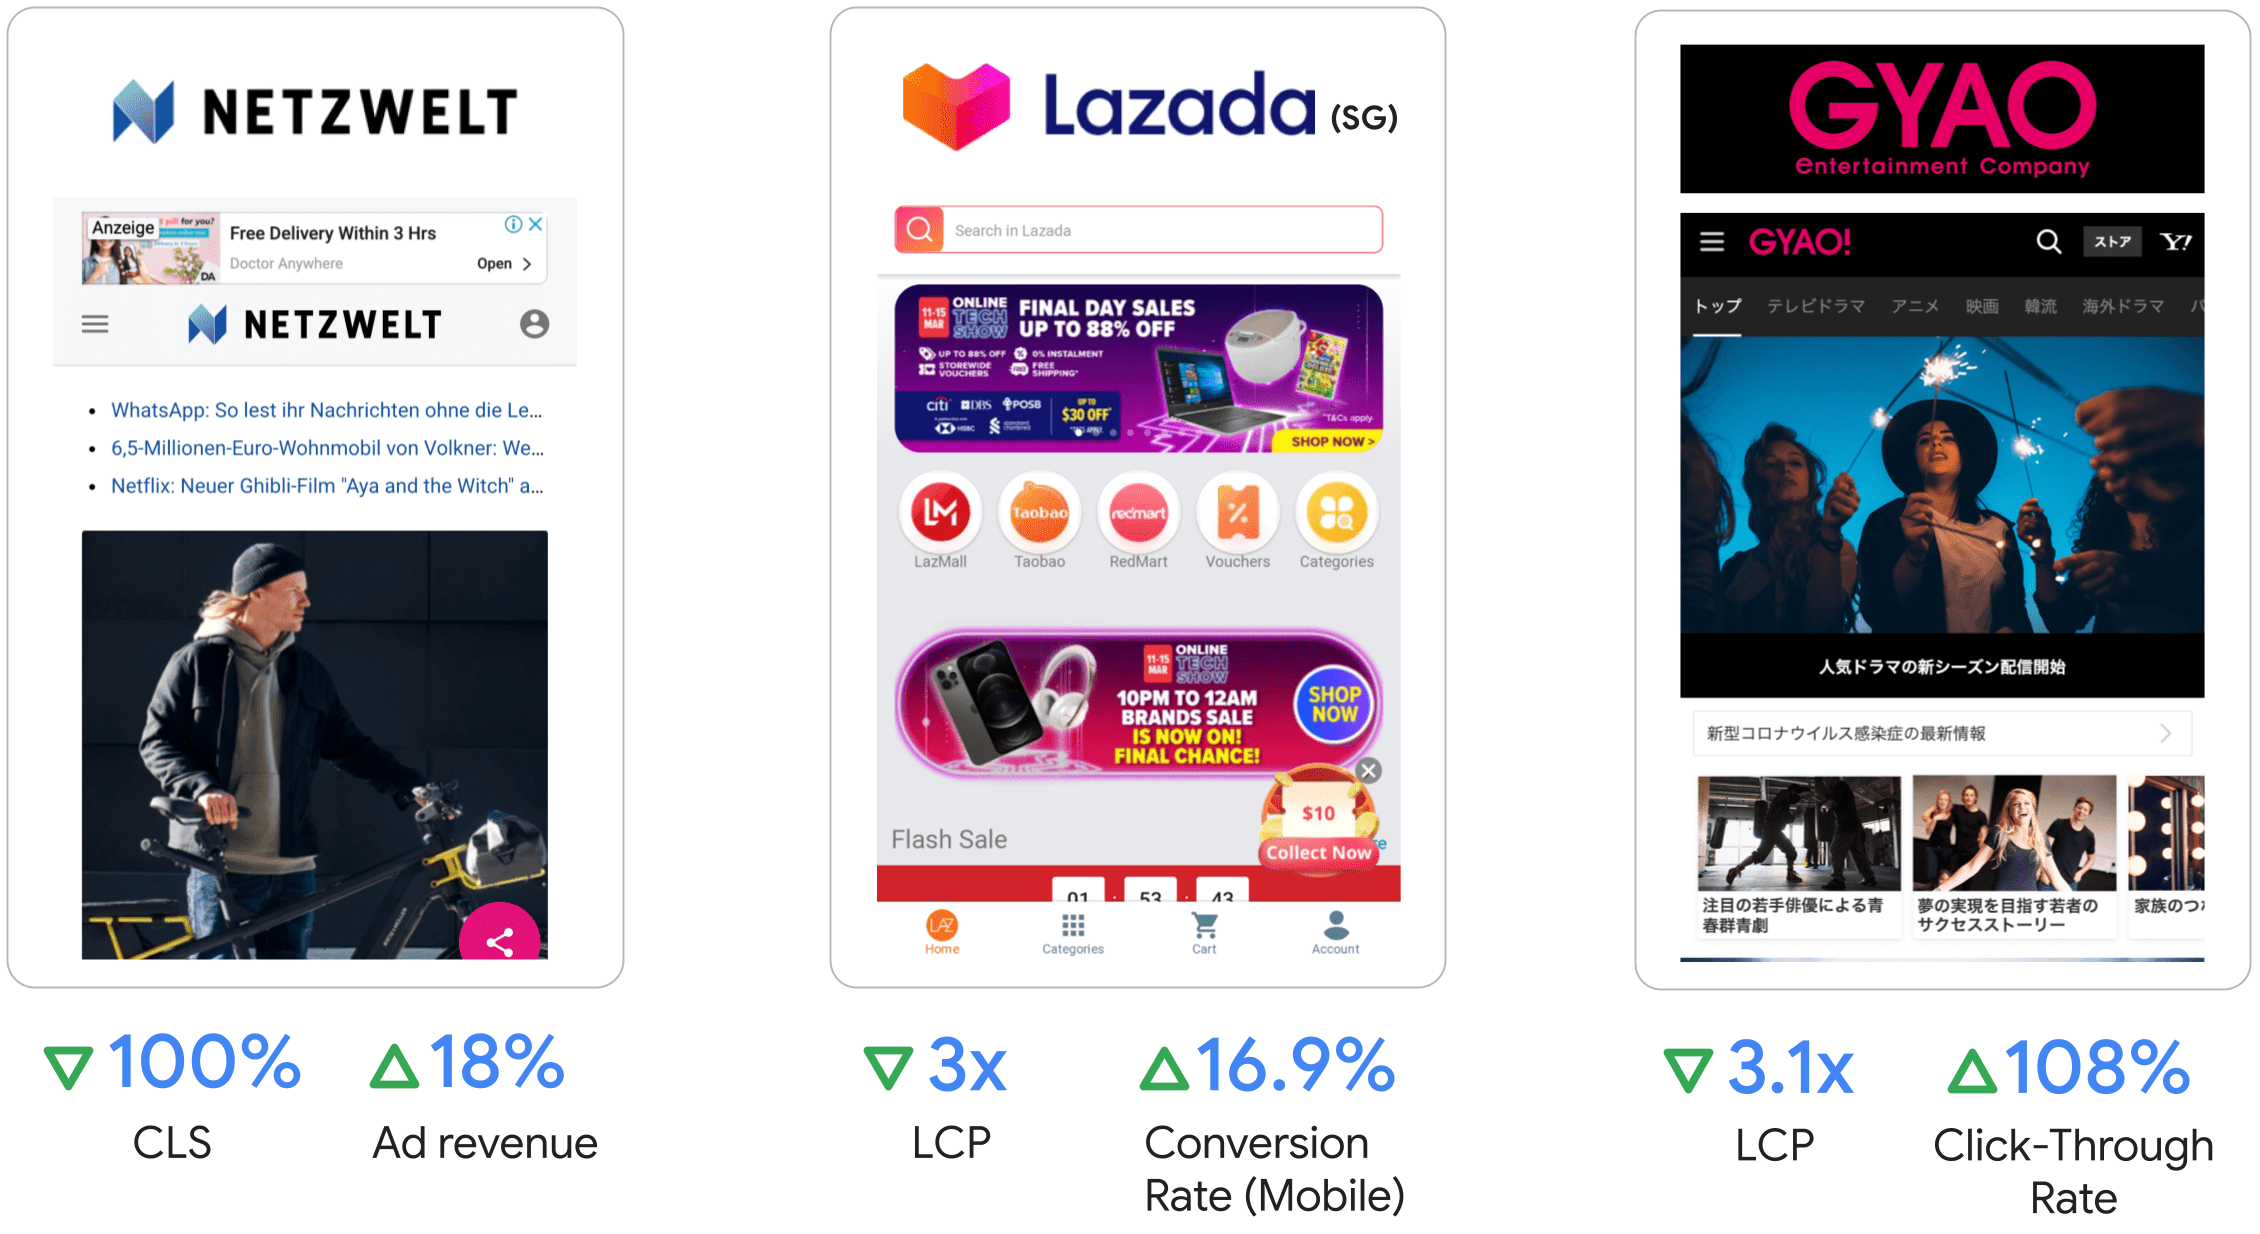 Netzwelt ha registrato un aumento del 18% delle entrate pubblicitarie,
Lazada ha triplicato l&#39;LCP e il 16,9% del tasso di conversione sui dispositivi mobili,
GYAO ha registrato un aumento di 3,1 volte LCP e del 108% della percentuale di clic